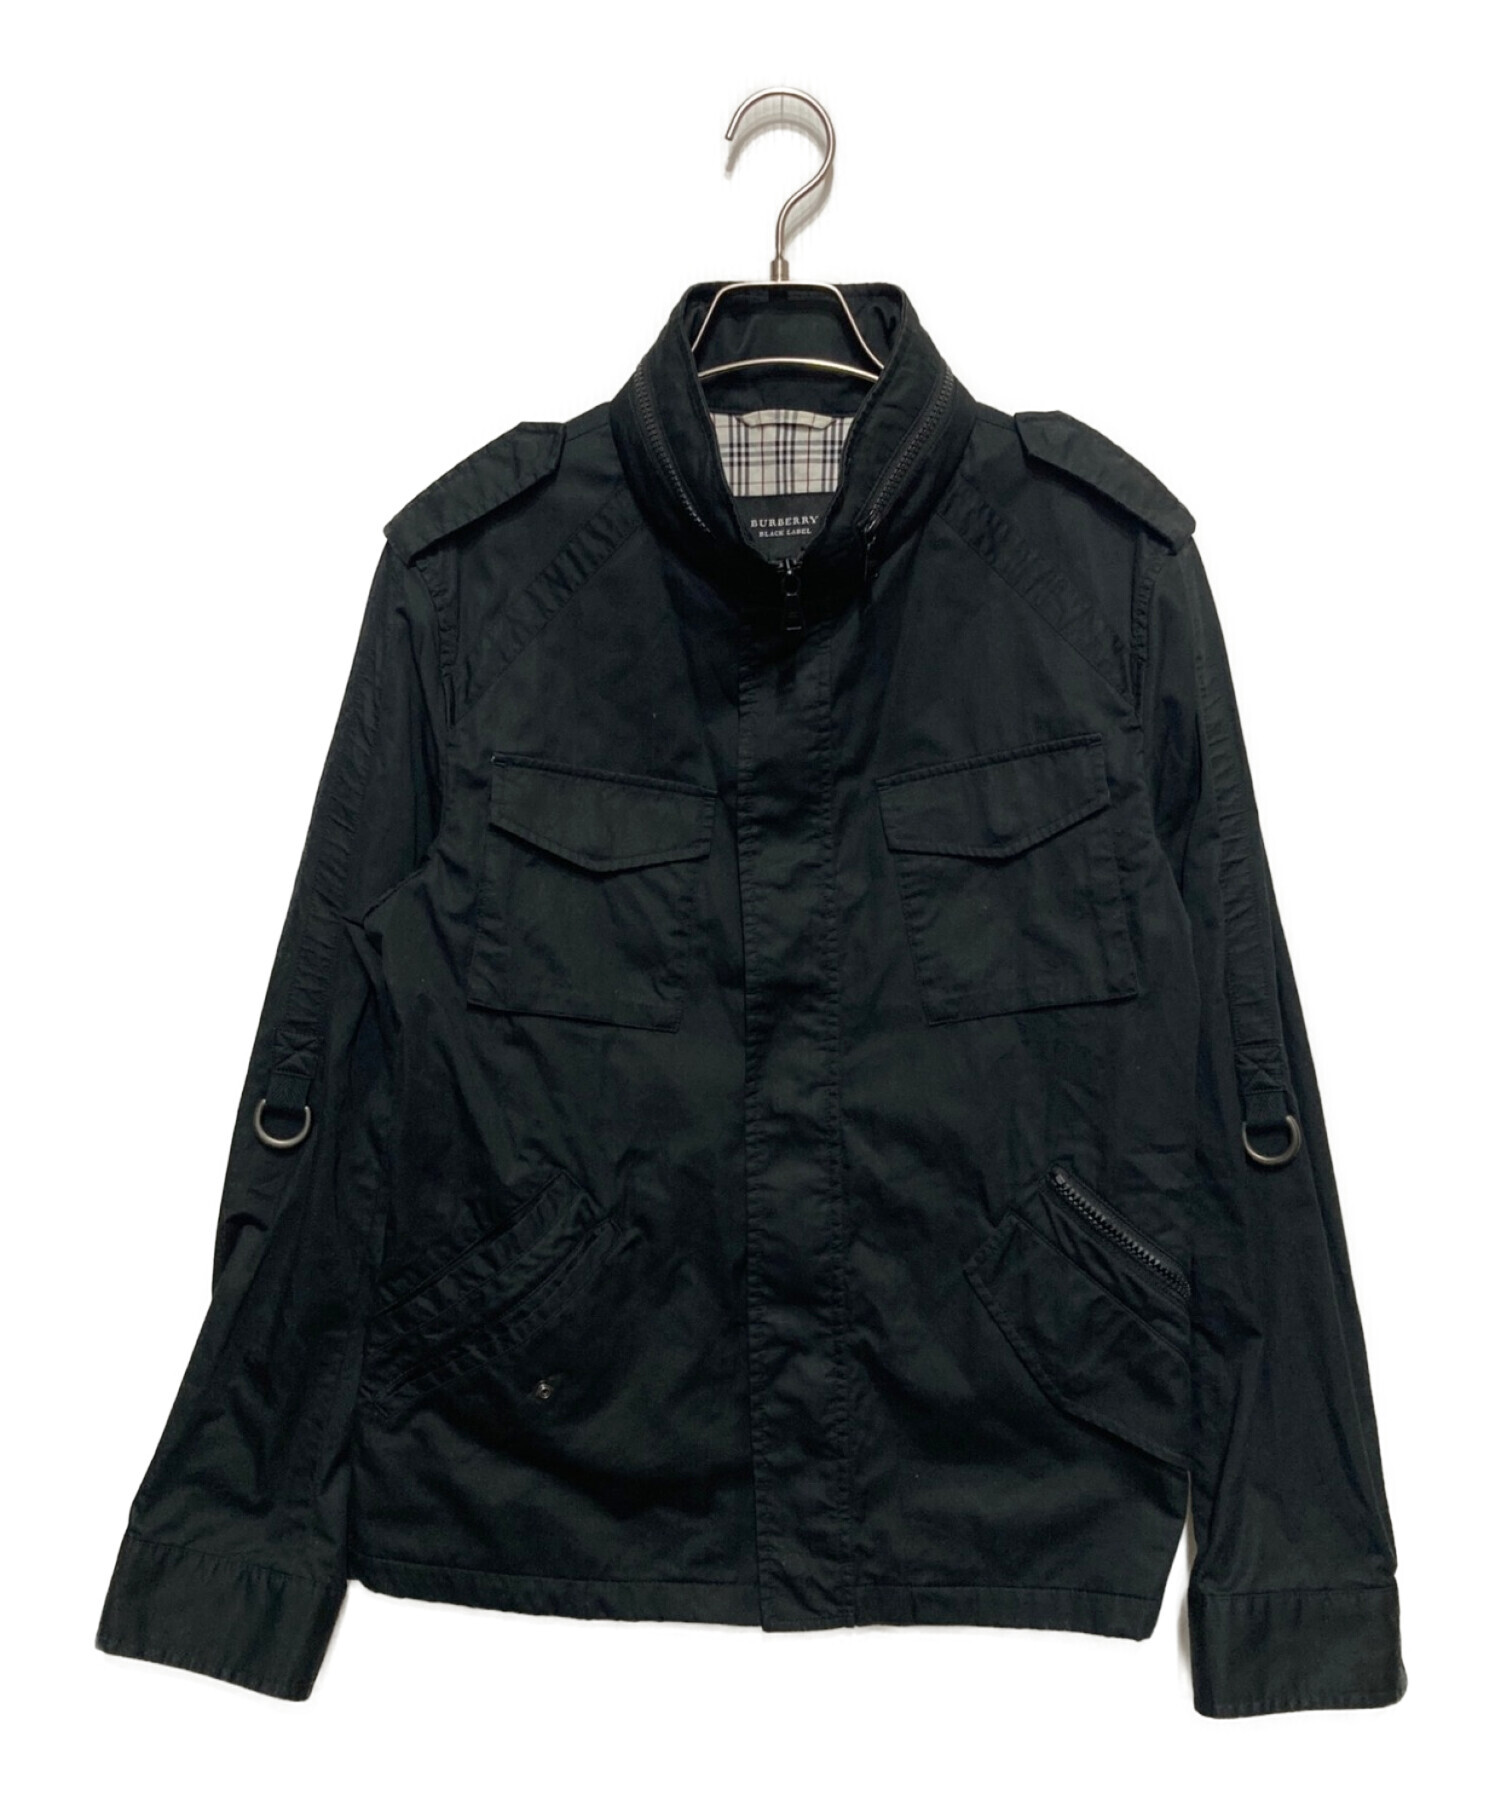 BURBERRY BLACK LABEL (バーバリーブラックレーベル) フィールドジャケット ブラック サイズ:Ⅿ